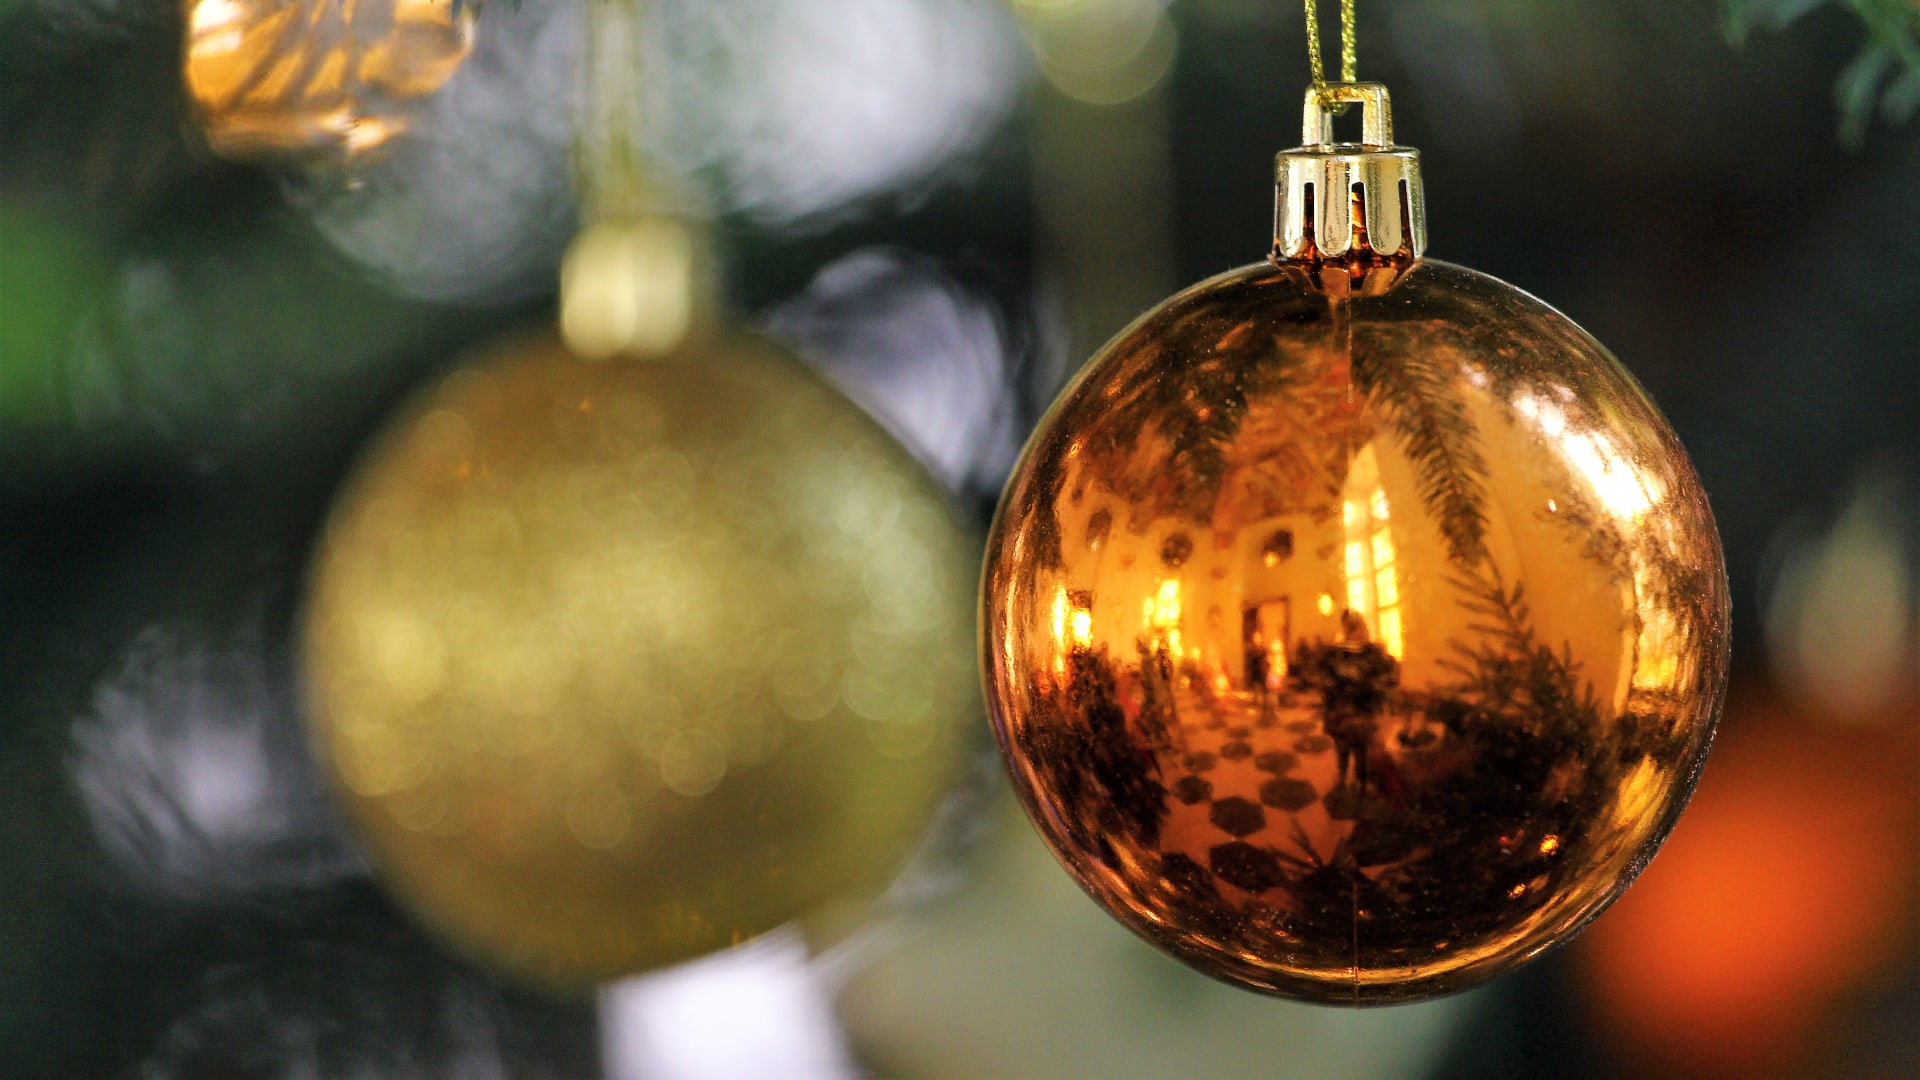 Vánoce na Vysočině: Jako každý rok se můžete těšit na spoustu vánočních akcí, které navodí tu správnou slavnostní atmosféru. Přijeďte si třeba nakoupit originální dárky na tradiční vánoční trhy na zámek ve Žďáru nad Sázavou.